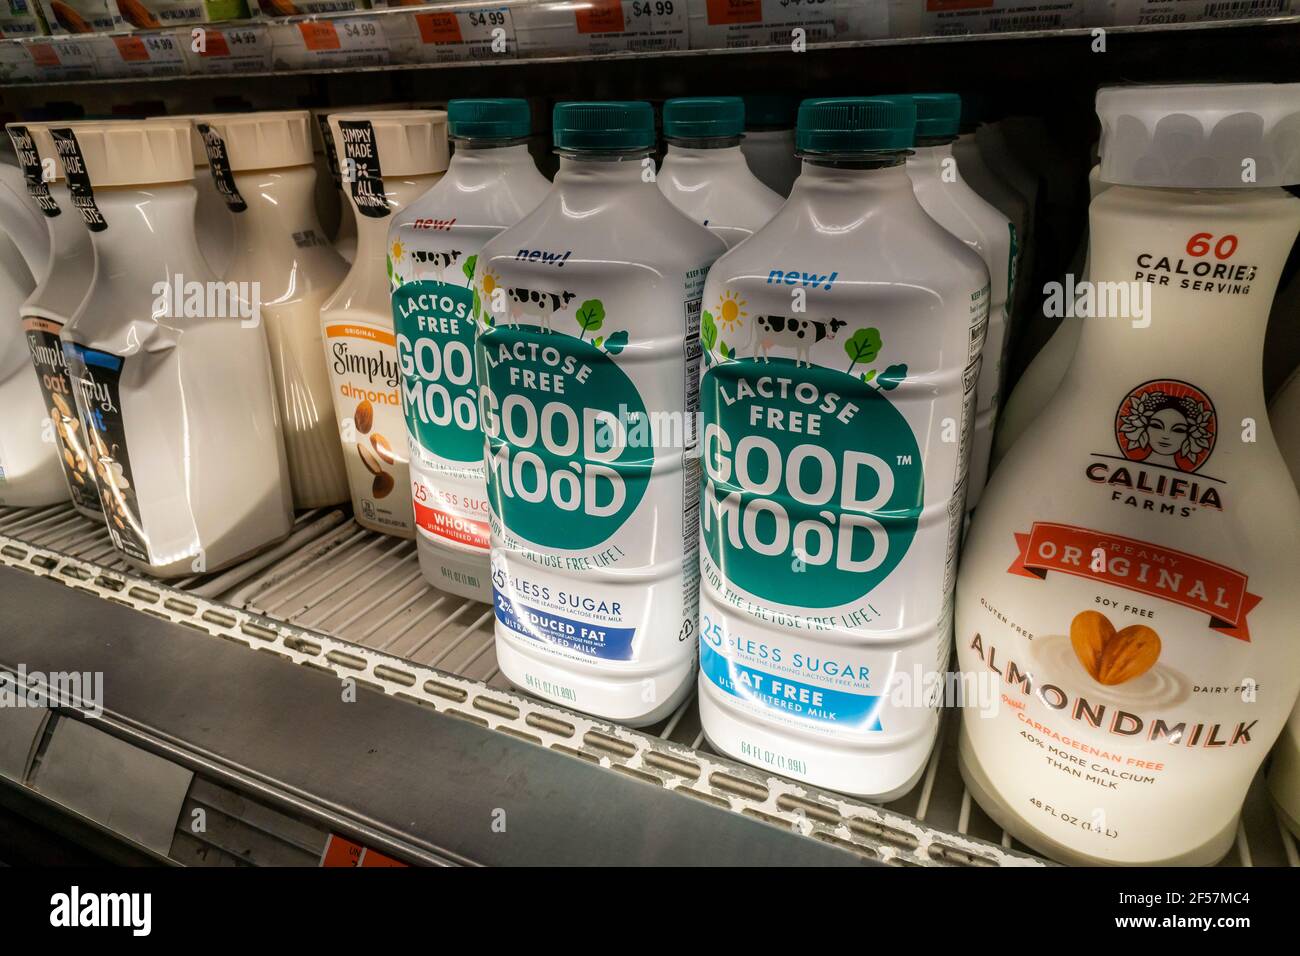 Container von Coca-Colas guter Moo'd Premium laktosefreie 'Supermilch' in  einem Supermarkt in New York am Donnerstag, 11. März 2021. Das  Premium-Getränk ist laktosefrei und enthält 25% weniger Zucker als  herkömmliche laktosefreie Milch.